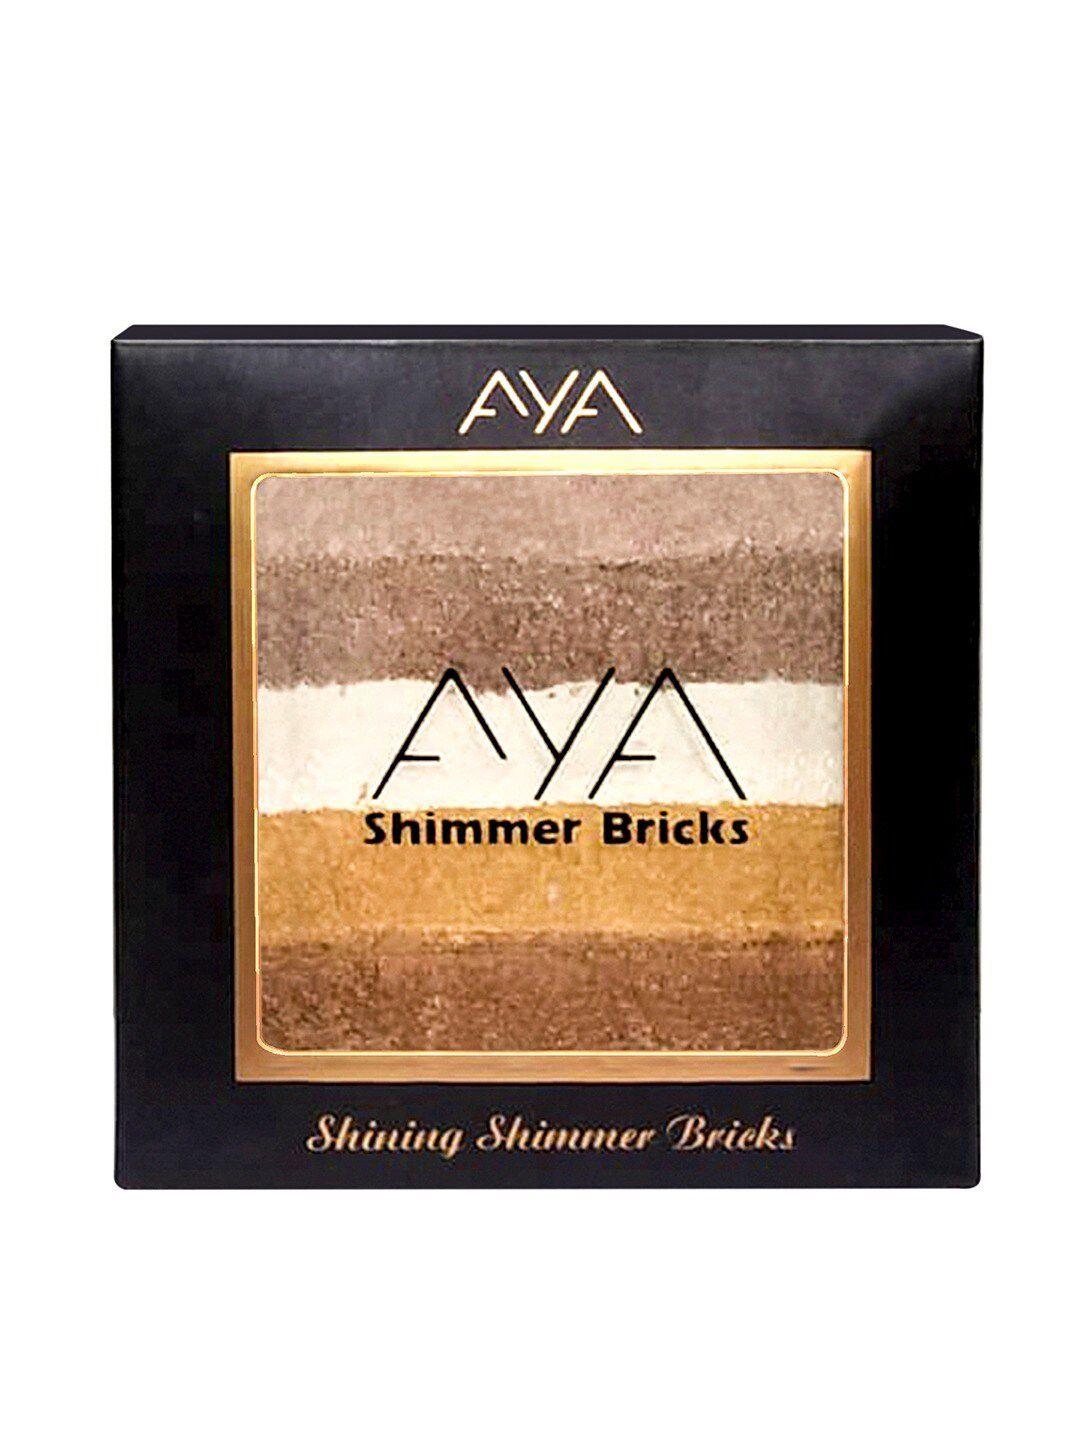 aya-shinning-shimmer-bricks-highlighter---shade-03